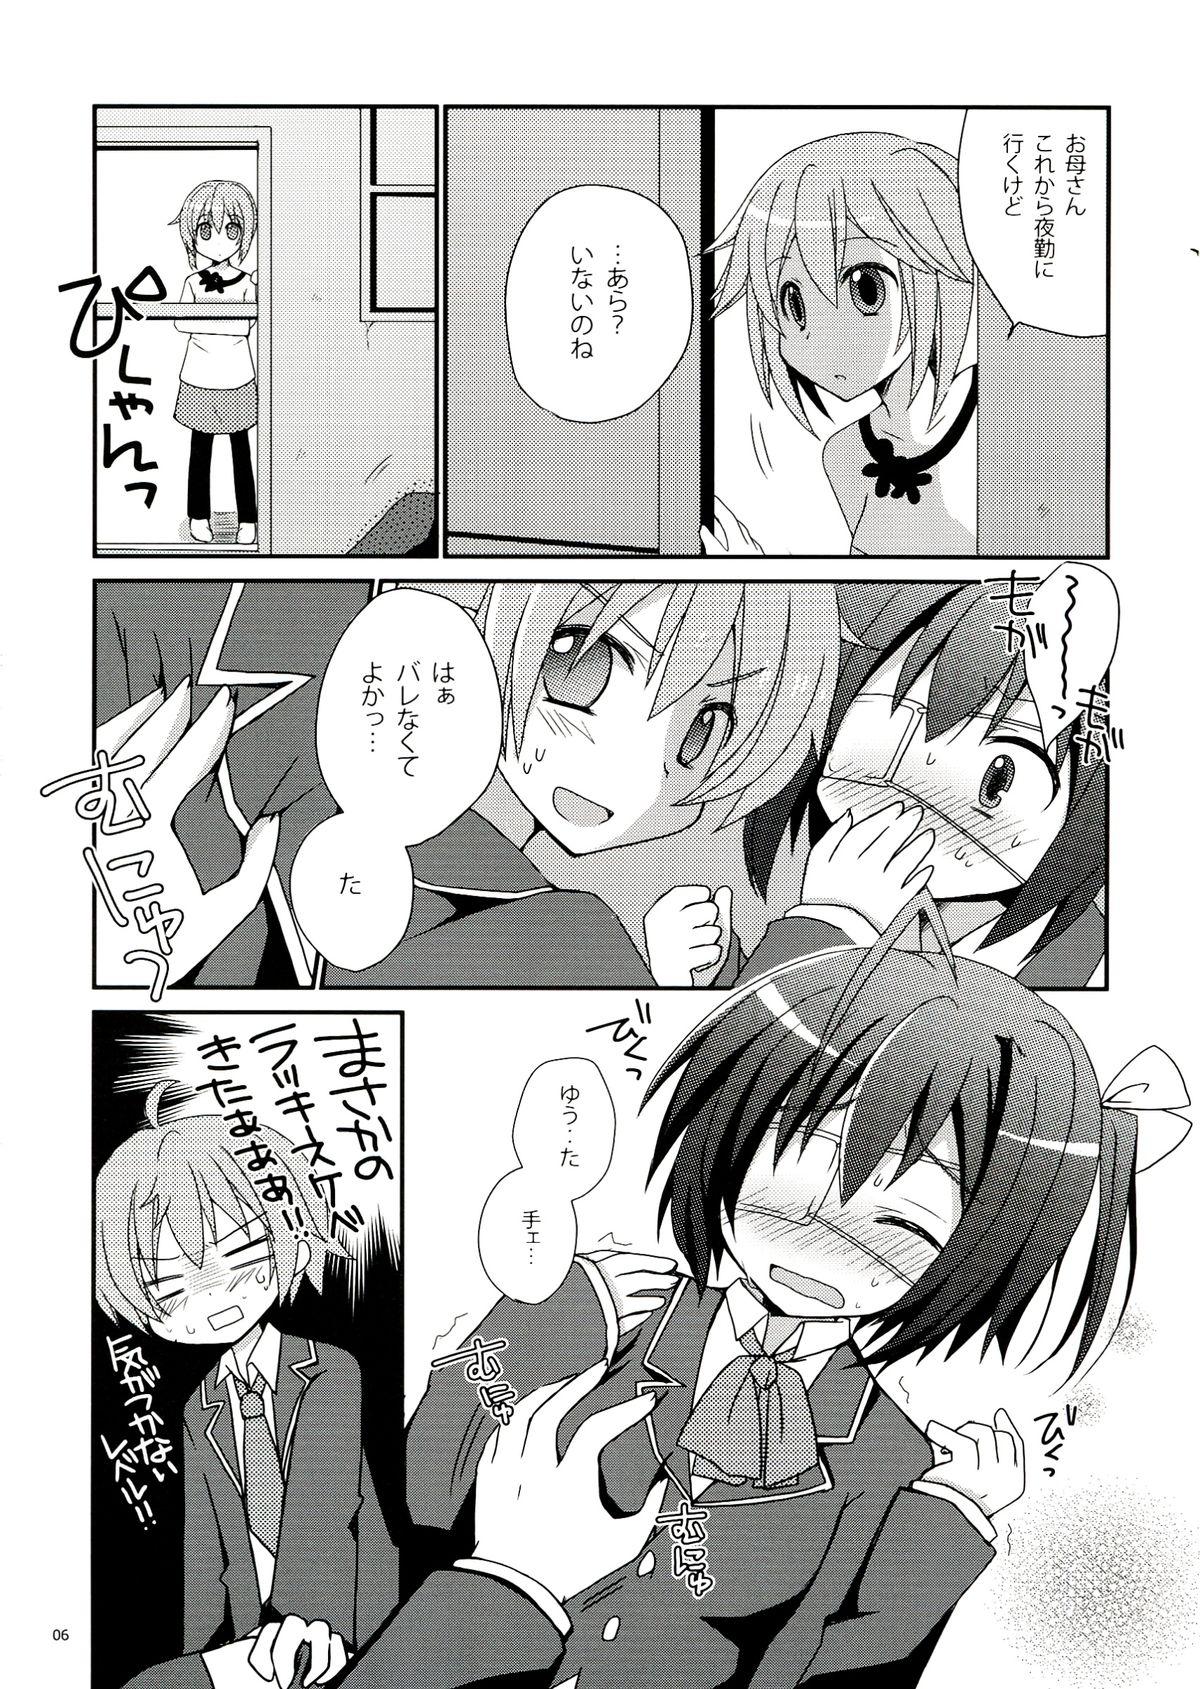 Cute Rikkachan to H ga Shitai! - Chuunibyou demo koi ga shitai Classroom - Page 6